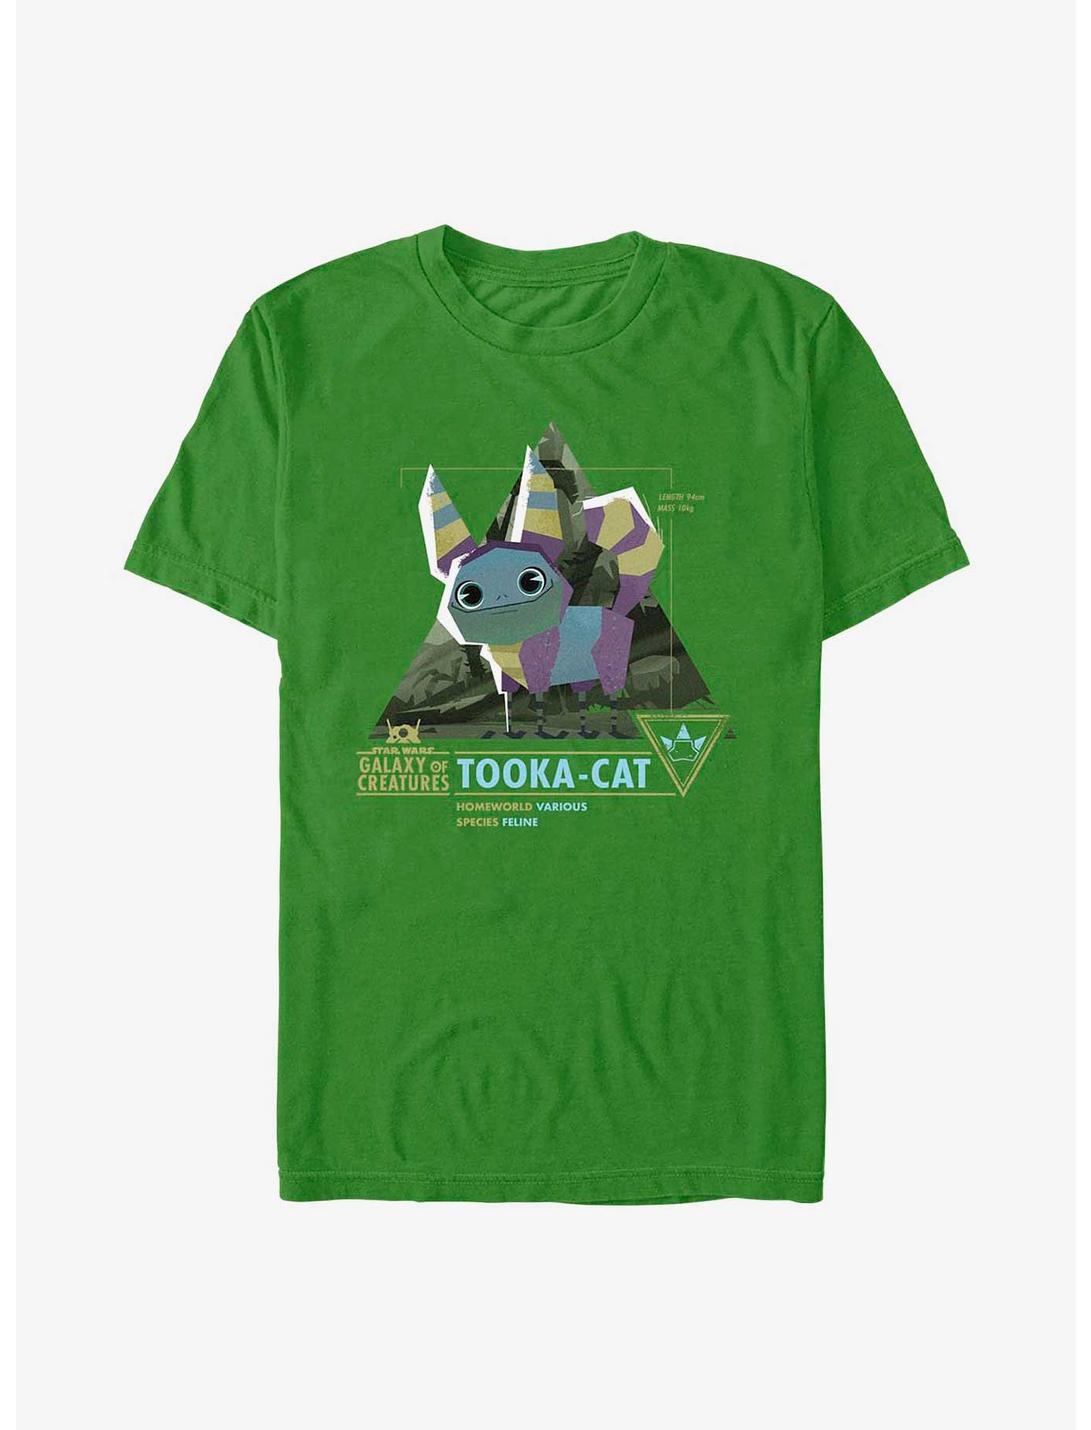 Star Wars Galaxy Of Creatures Tooka-Cat Species T-Shirt, KELLY, hi-res